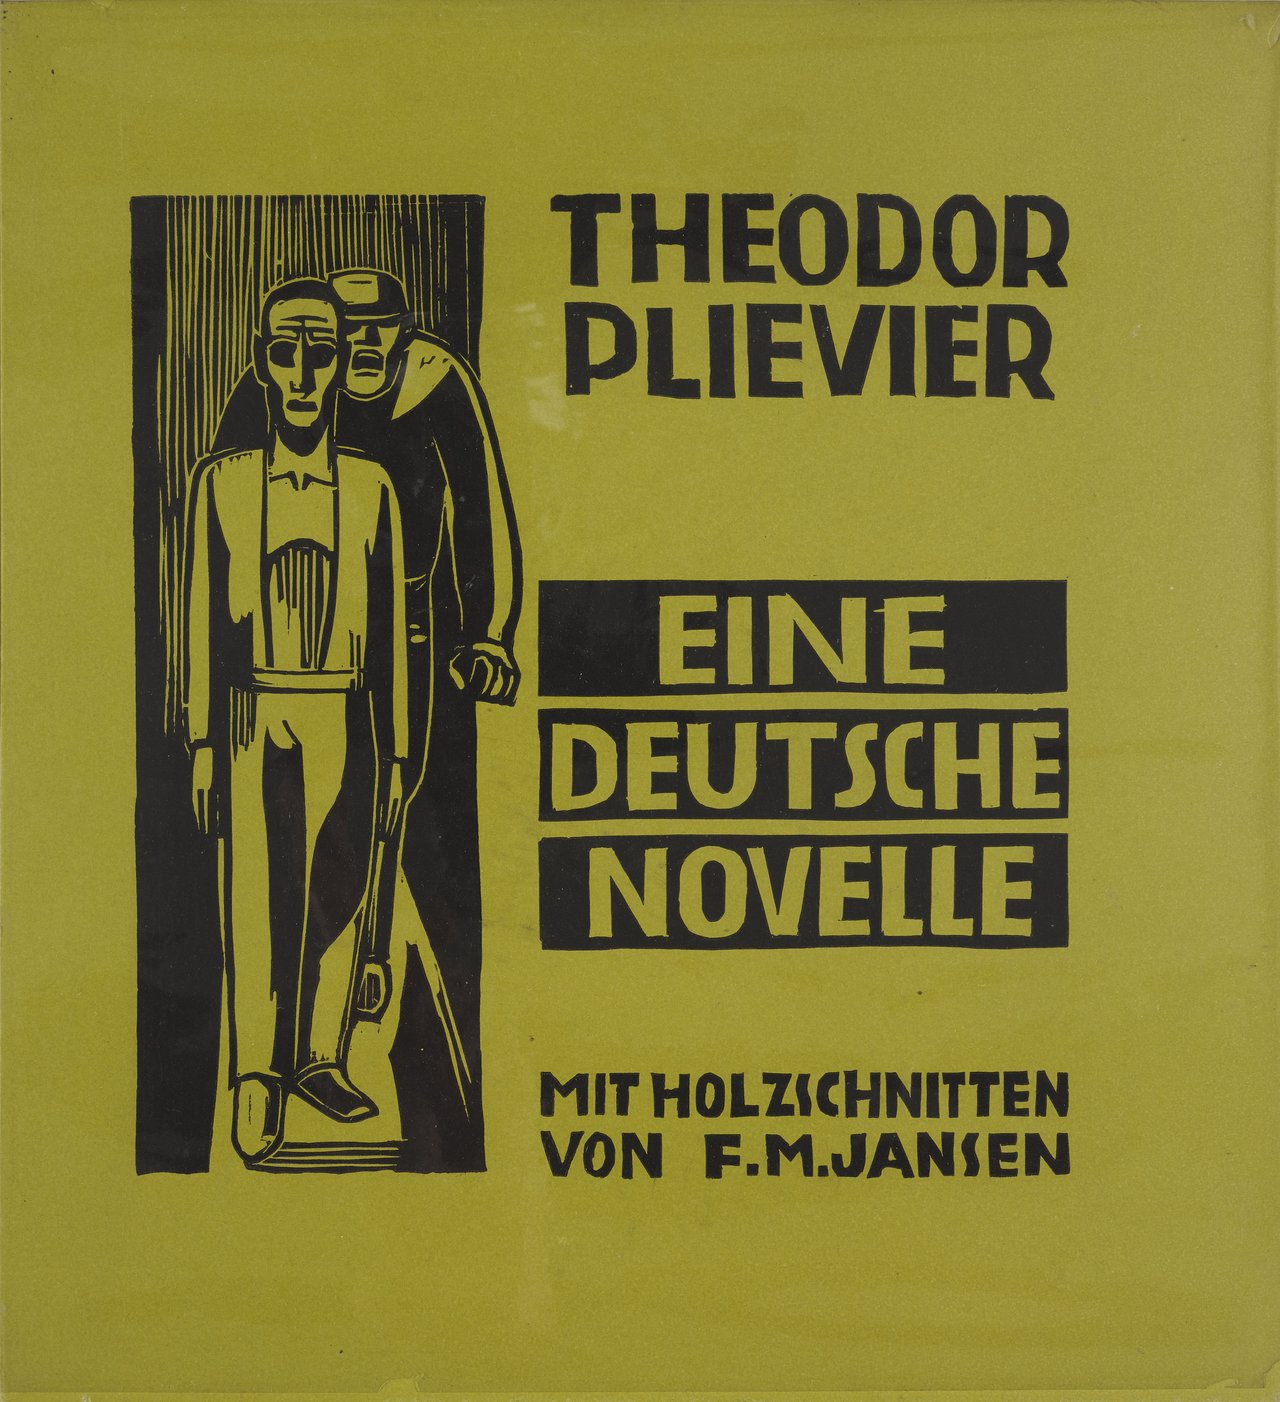 Theodor Plievier, Eine deutsche Novelle, mit Holzschnitten von F.M. Jansen, Bremen 1949